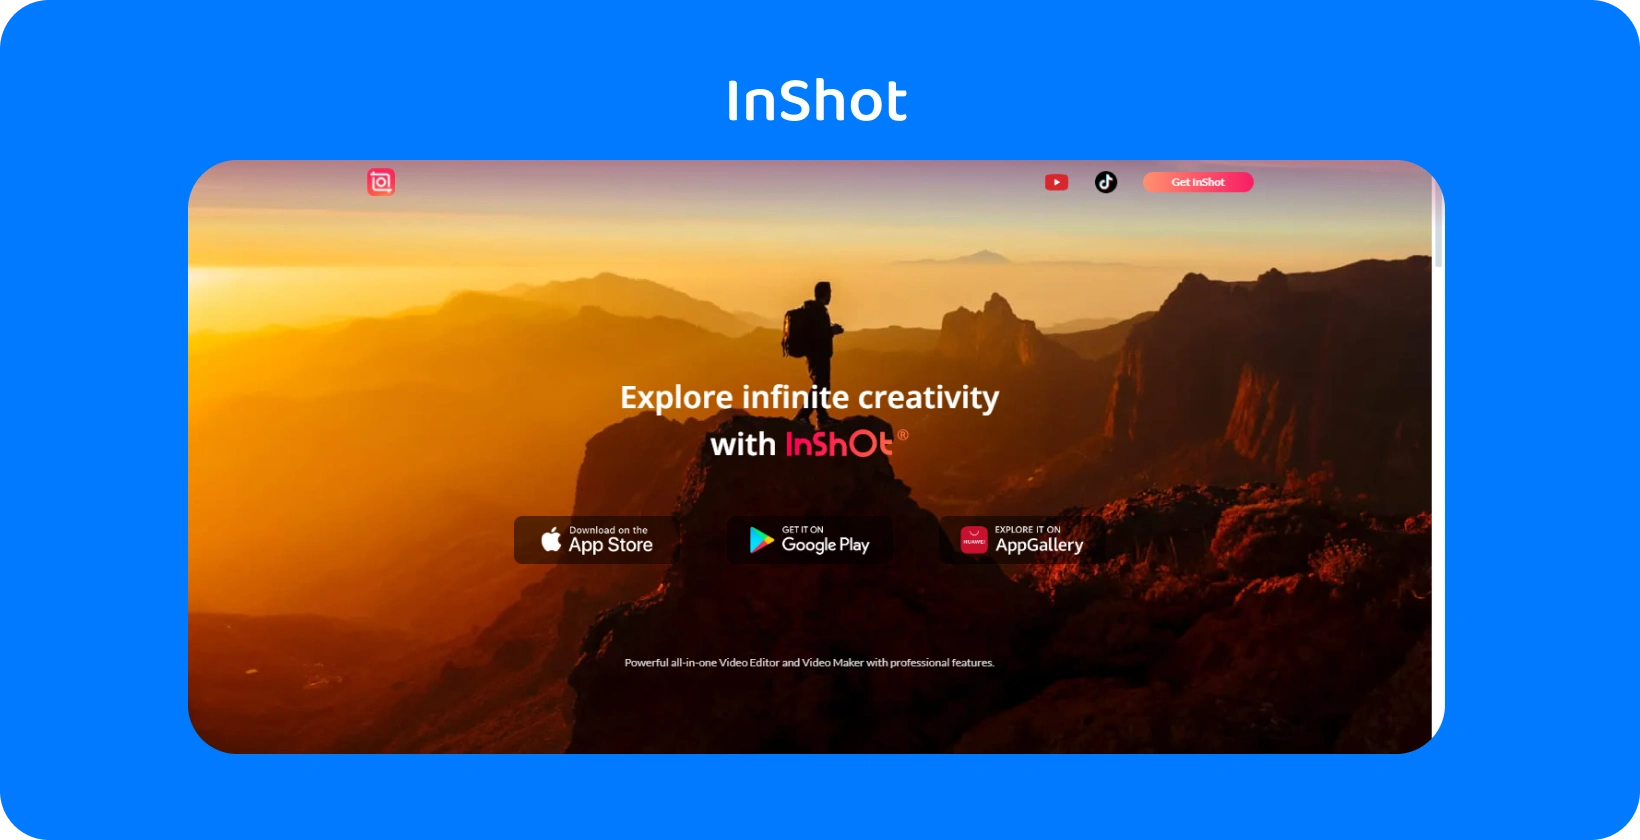 פרסומת של אפליקציית InShot מציגה מטייל בשקיעה, המסמלת את ההבטחה של האפליקציה לחקור יצירתיות אינסופית בעריכת וידאו.
